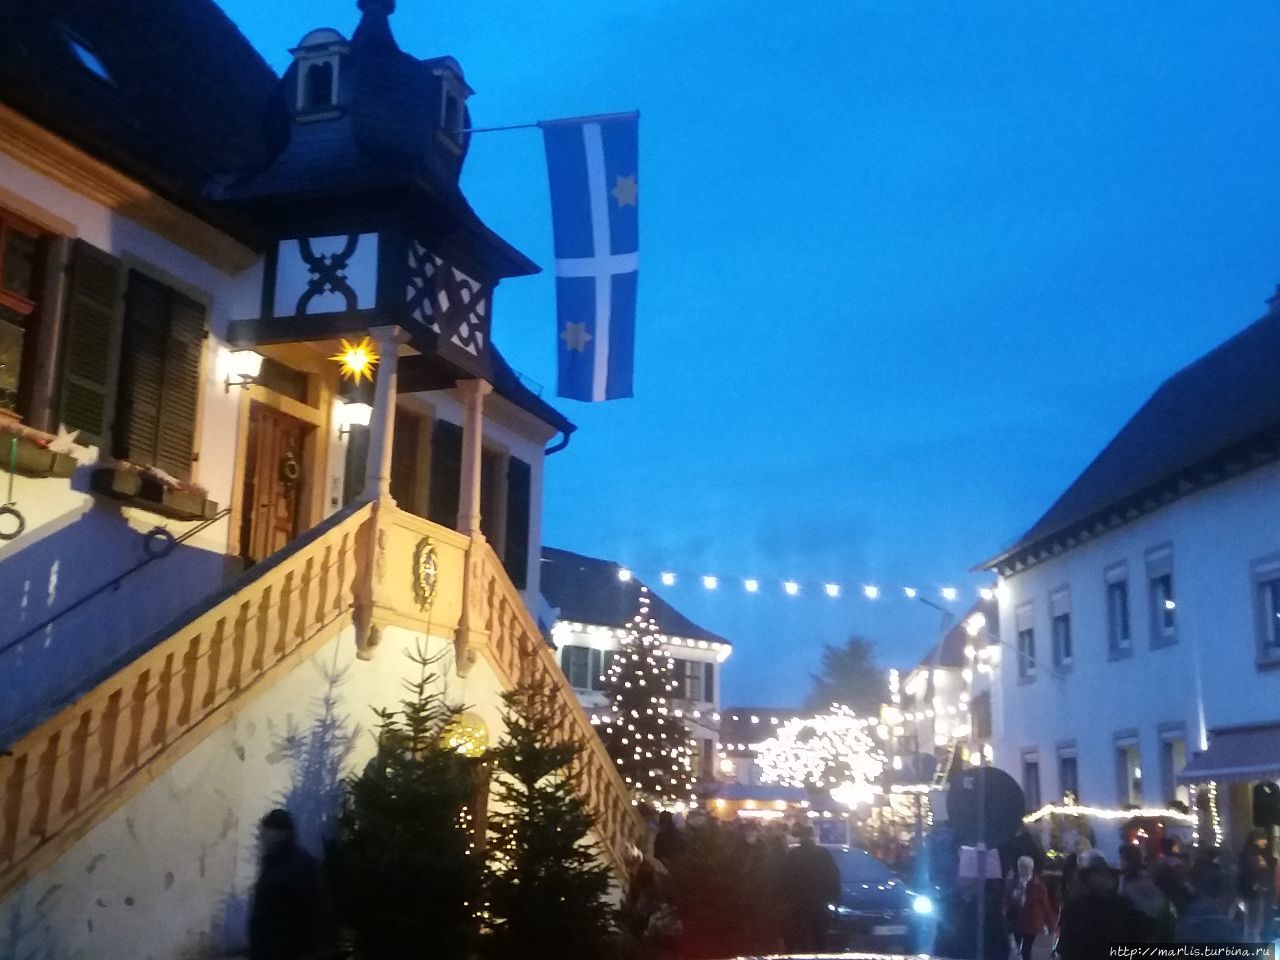 Атмосферный Рождественский базар в Дайдесхайме Дайдесхайм, Германия